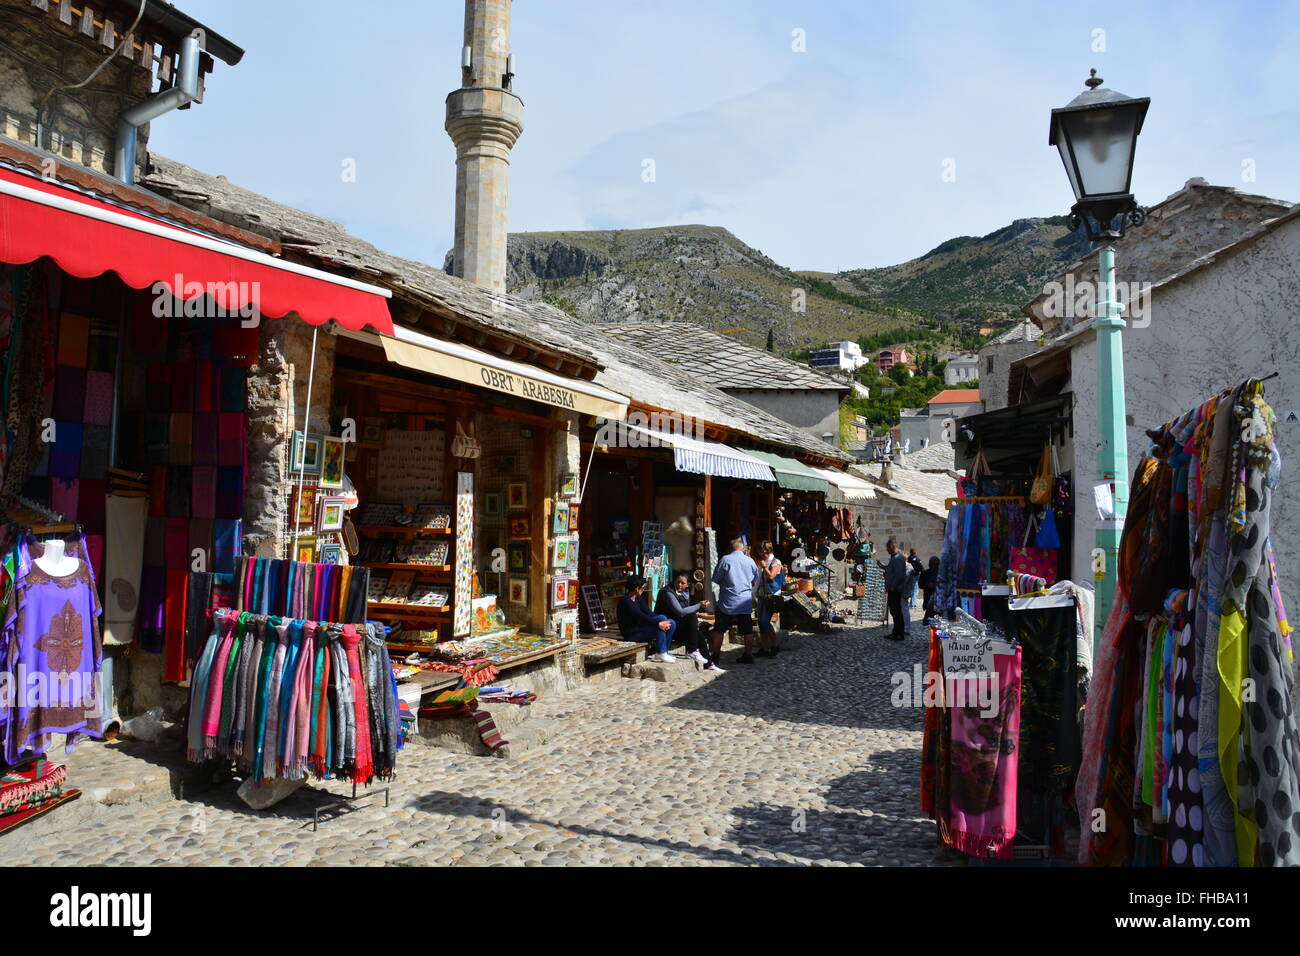 La rue pavée des marchés touristiques près du 16ème siècle reconstruite pont ottoman Stari Most ou vieux pont de Mostar. Banque D'Images